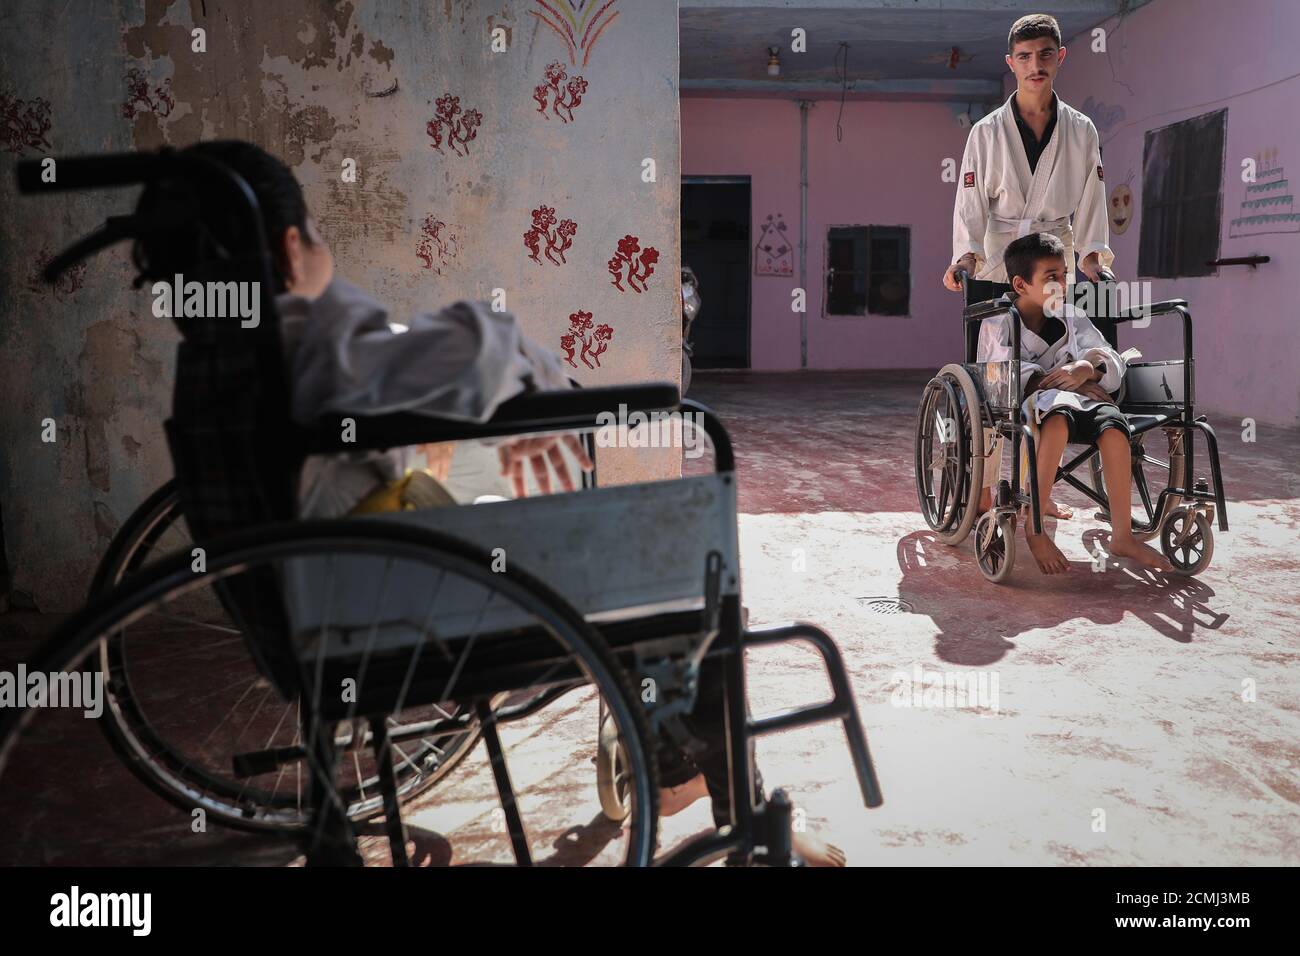 16 septembre 2020, Syrie, Alep : Des enfants en fauteuil roulant arrivent pour assister à un cours de formation de karaté conduit par Wasim Satot, 38 ans, un entraîneur de karaté tenant une ceinture noire, à l'intérieur d'une école appartenant à sa mère pour des enfants à besoins spéciaux tels que le syndrome de Down·s, l'autisme et d'autres handicaps, dans le village d'Aljiina dans la campagne d'Alep. Wasim est un professeur d'éducation physique a commencé son propre projet de karaté il y a un an, dans lequel il était désireux de fusionner entre 10 enfants à besoins spéciaux et d'autres 10 enfants en bonne santé de 6 à 15 ans dans une classe de formation de karaté pour les intégrer ensemble dans la société thr Banque D'Images